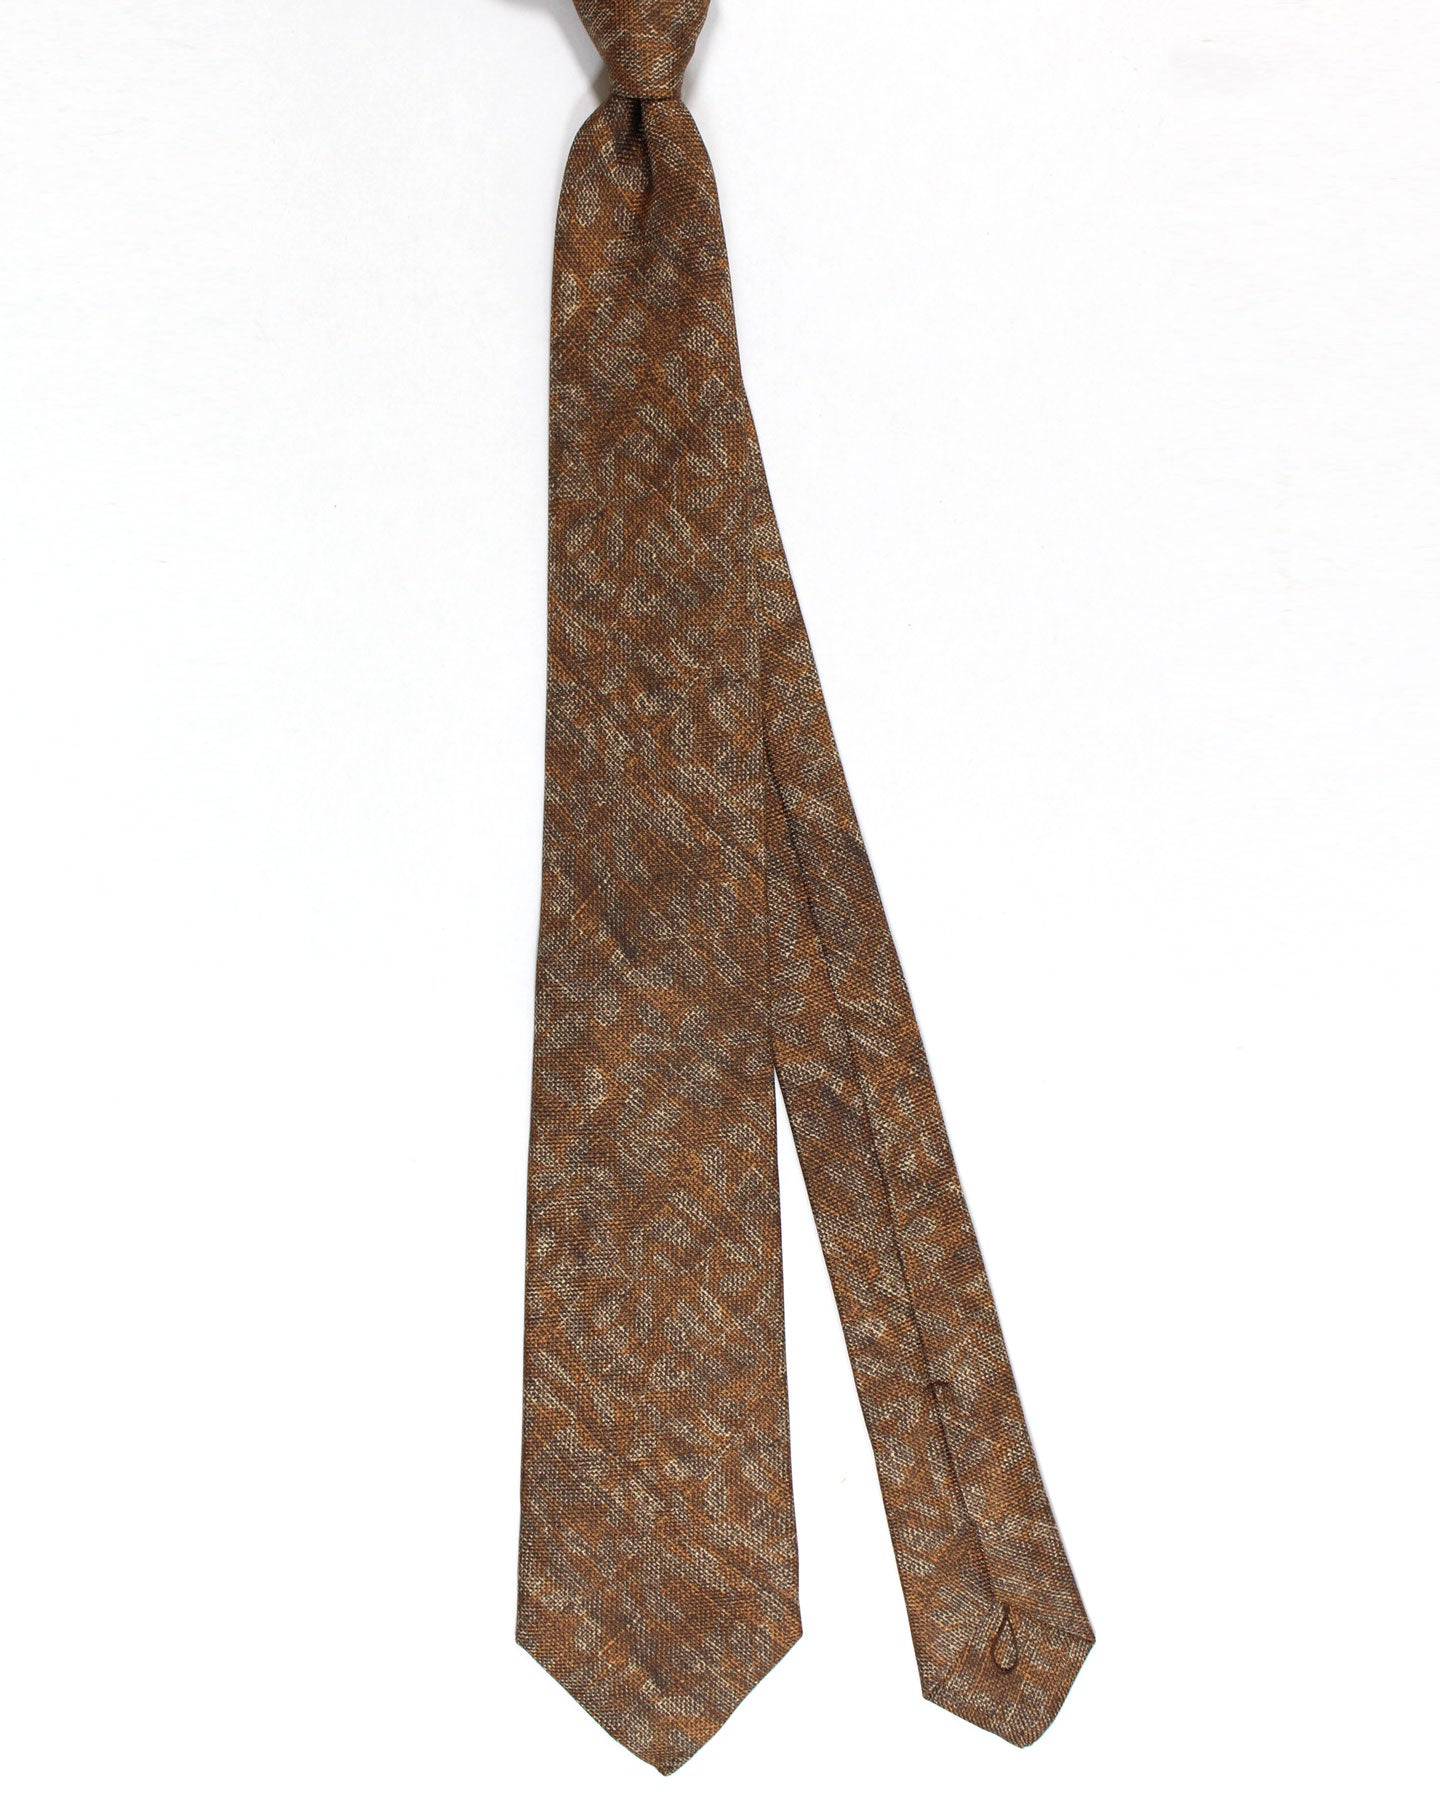 Kiton Silk Tie Brown Gray Design - Sevenfold Necktie